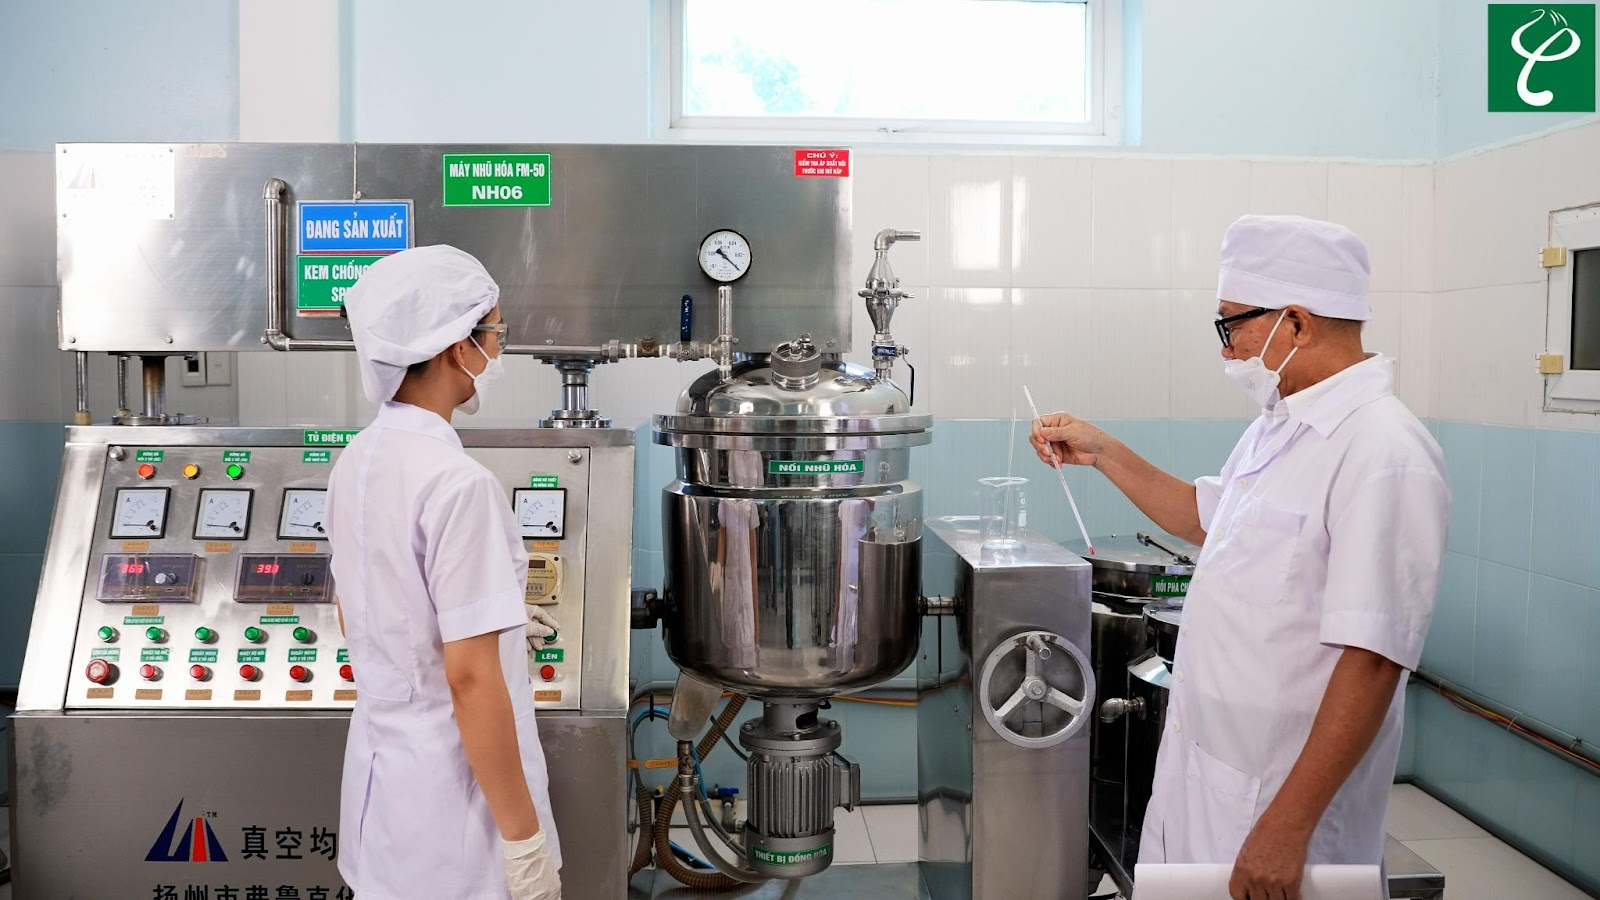 Nam dược Hải Long sở hữu máy móc gia công kem chống nắng Vân Đồn hiện đại